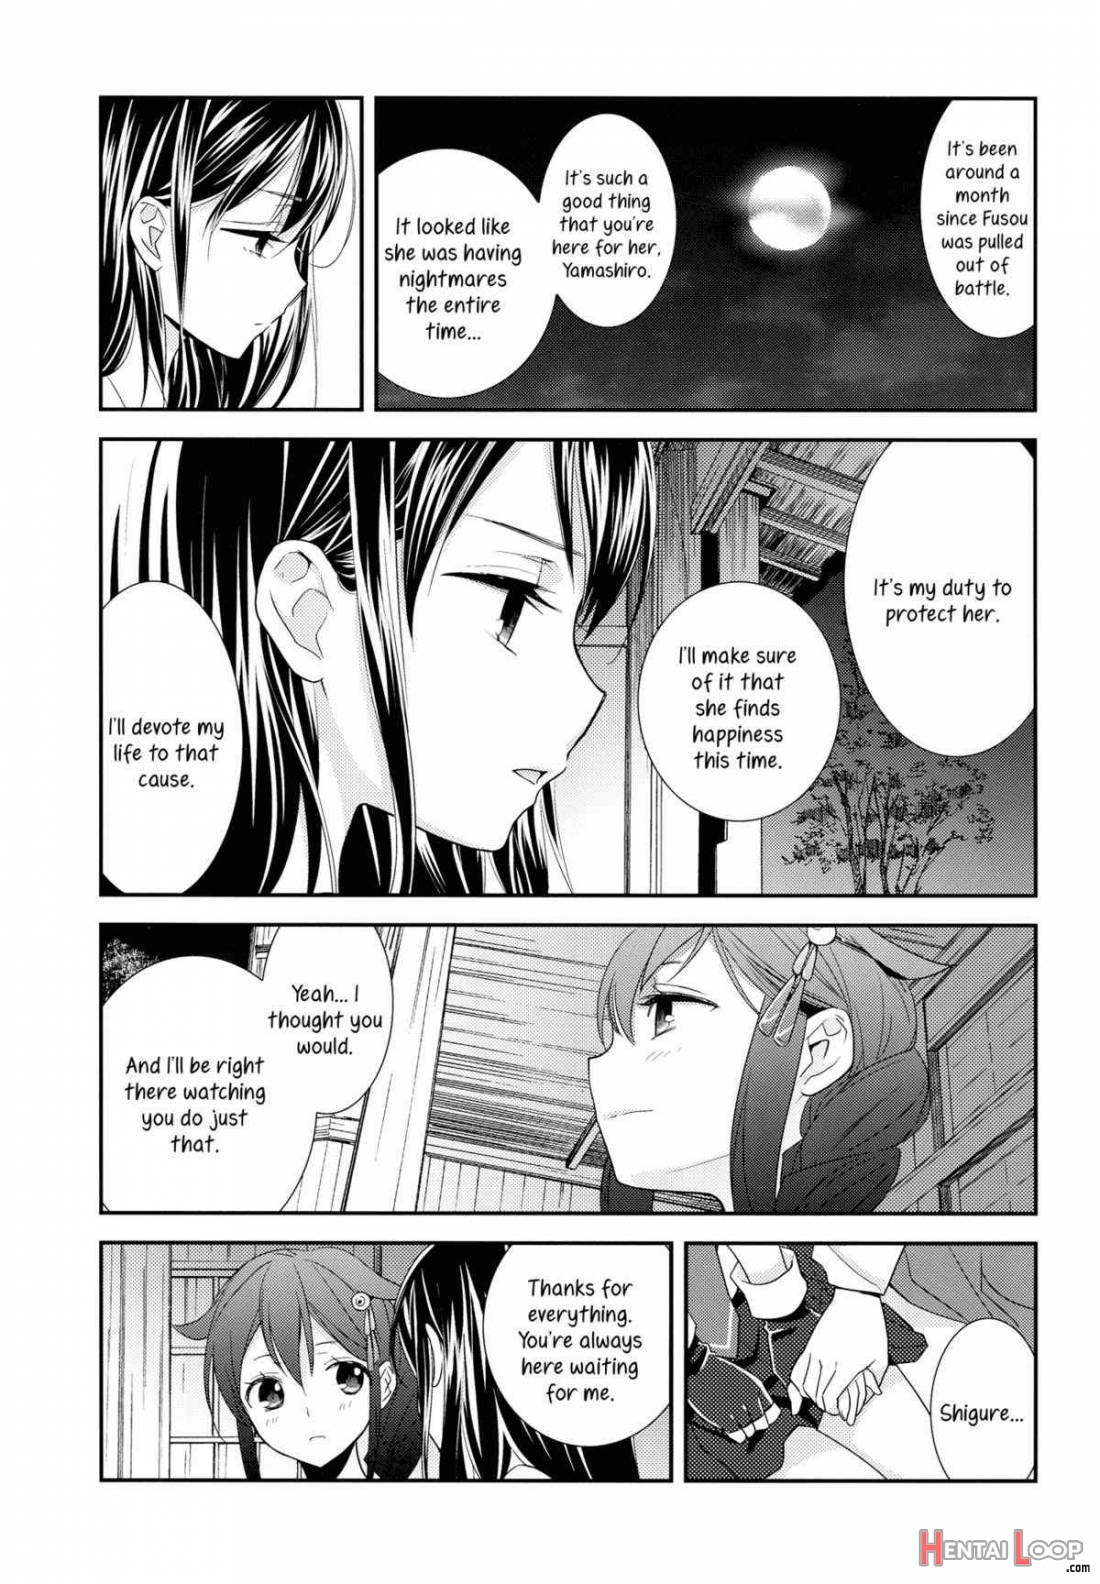 Yama Shigure page 9